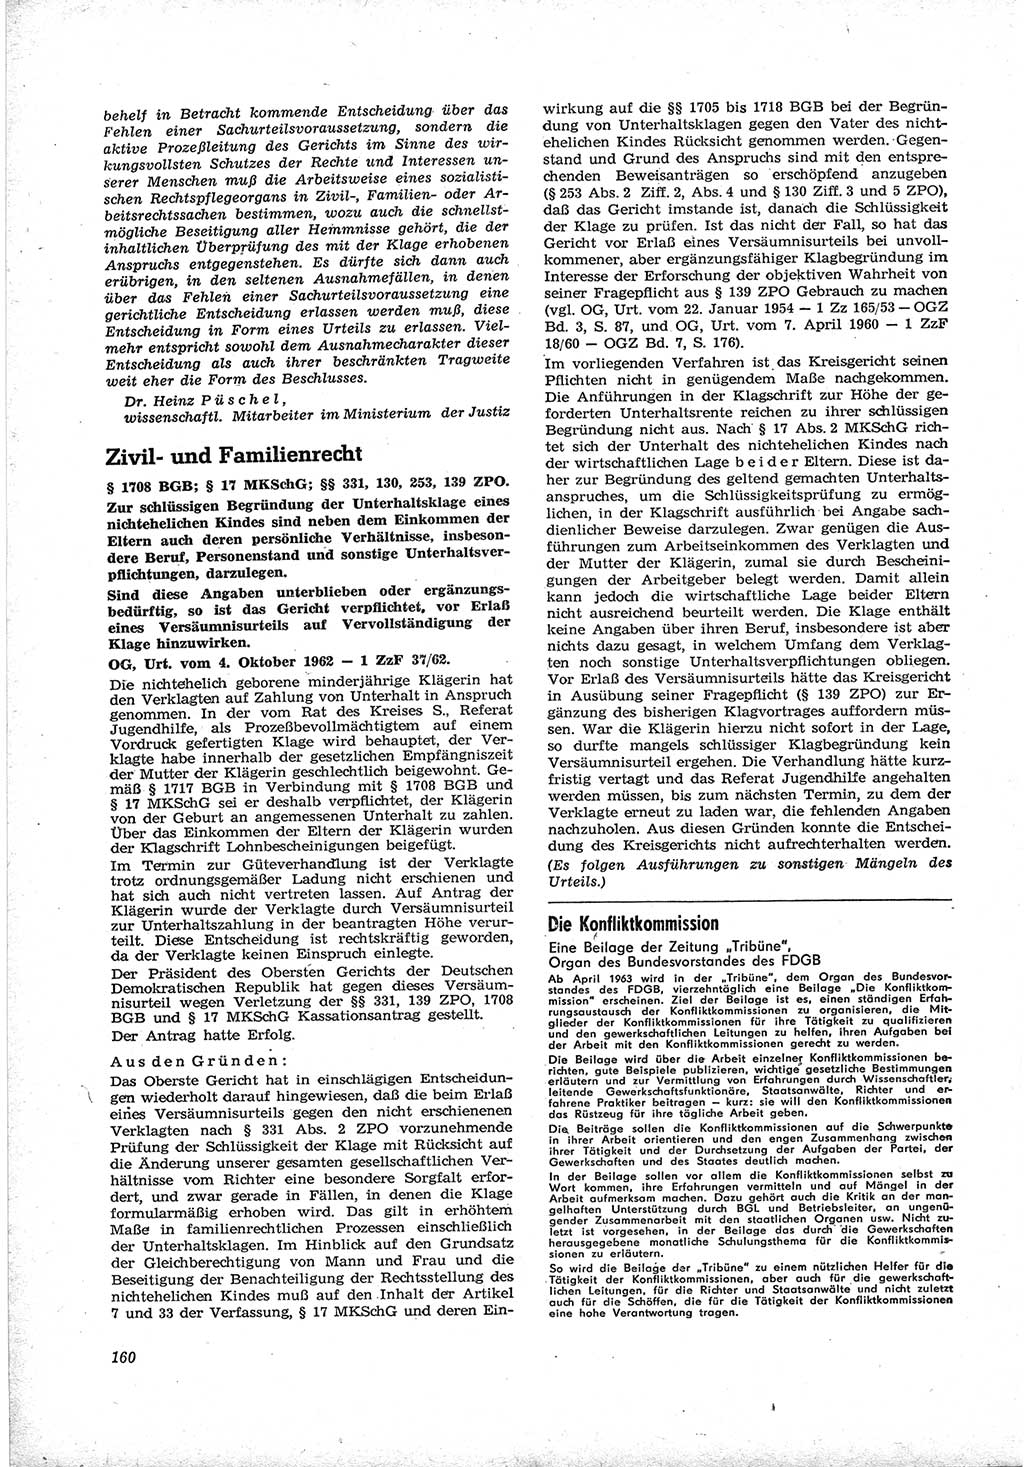 Neue Justiz (NJ), Zeitschrift für Recht und Rechtswissenschaft [Deutsche Demokratische Republik (DDR)], 17. Jahrgang 1963, Seite 160 (NJ DDR 1963, S. 160)